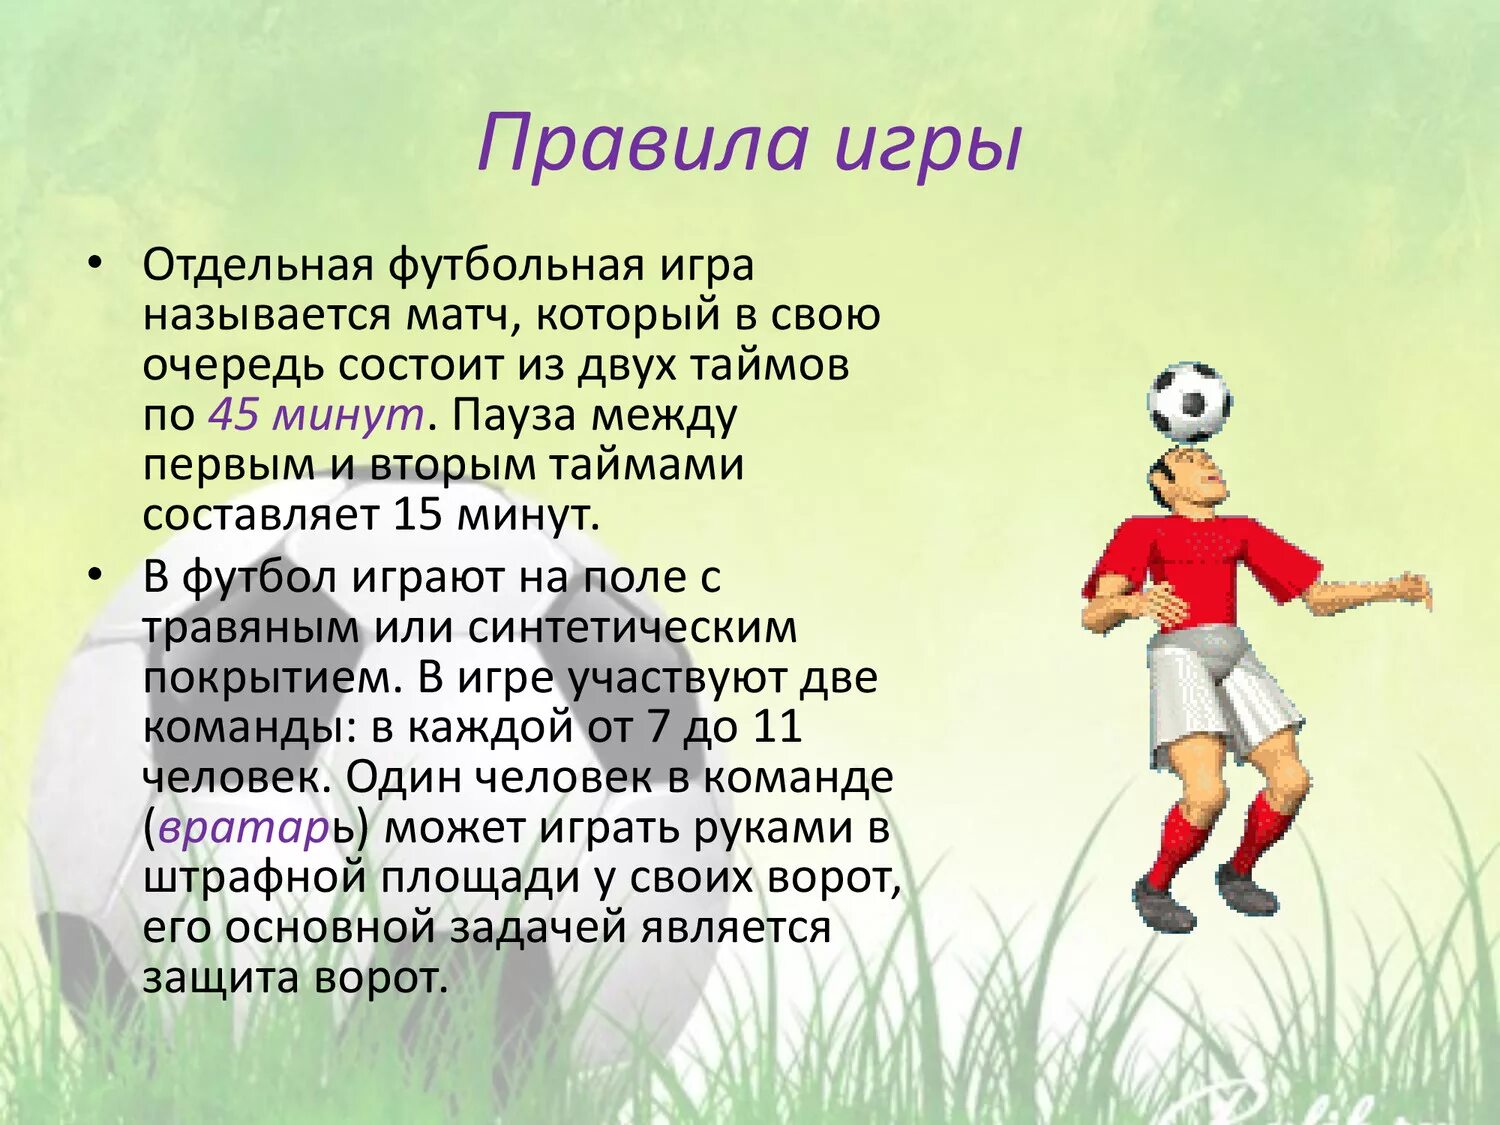 Про свою любимую игру. Описание игры футбол. Презентация на тему футбол. Краткое описание игры футбол. Проект на тему футбол презентация.